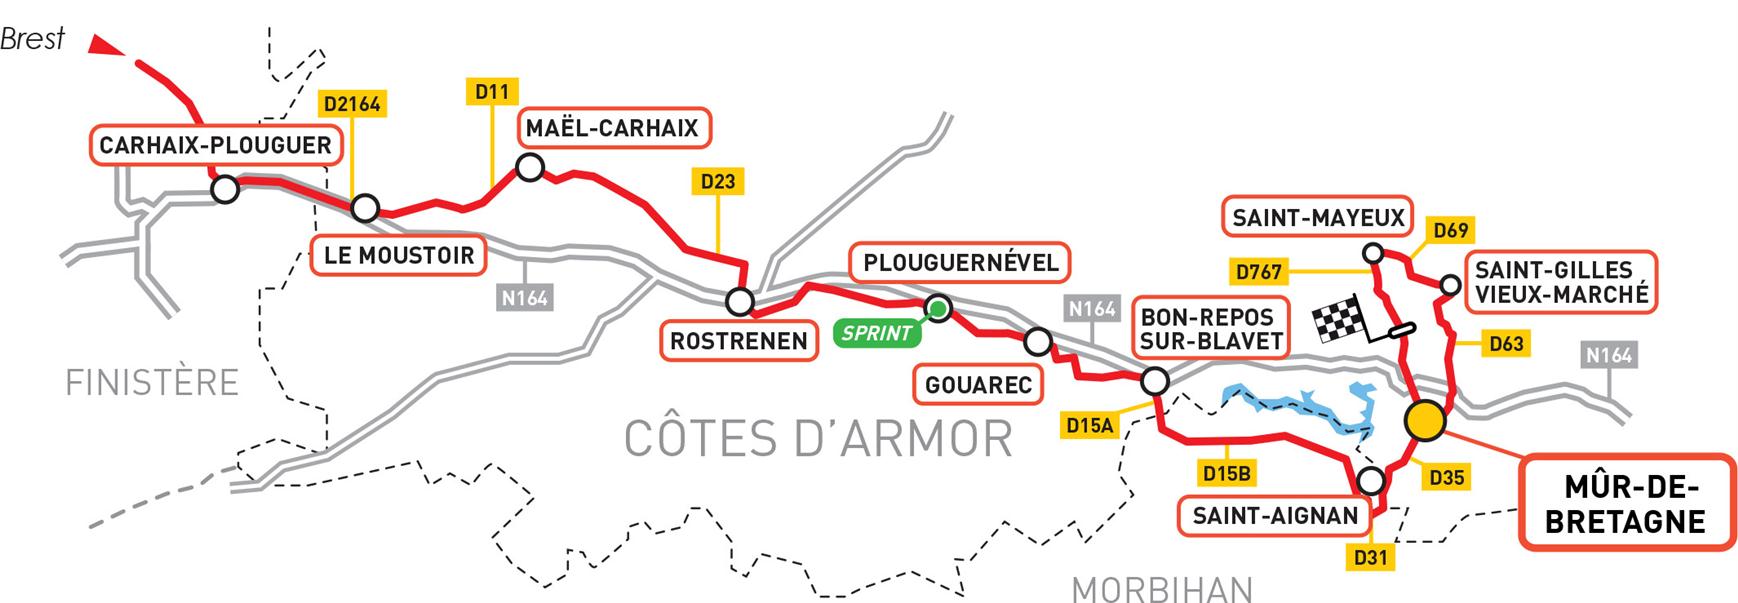 Etape du Tour de France en Côtes d'Armor